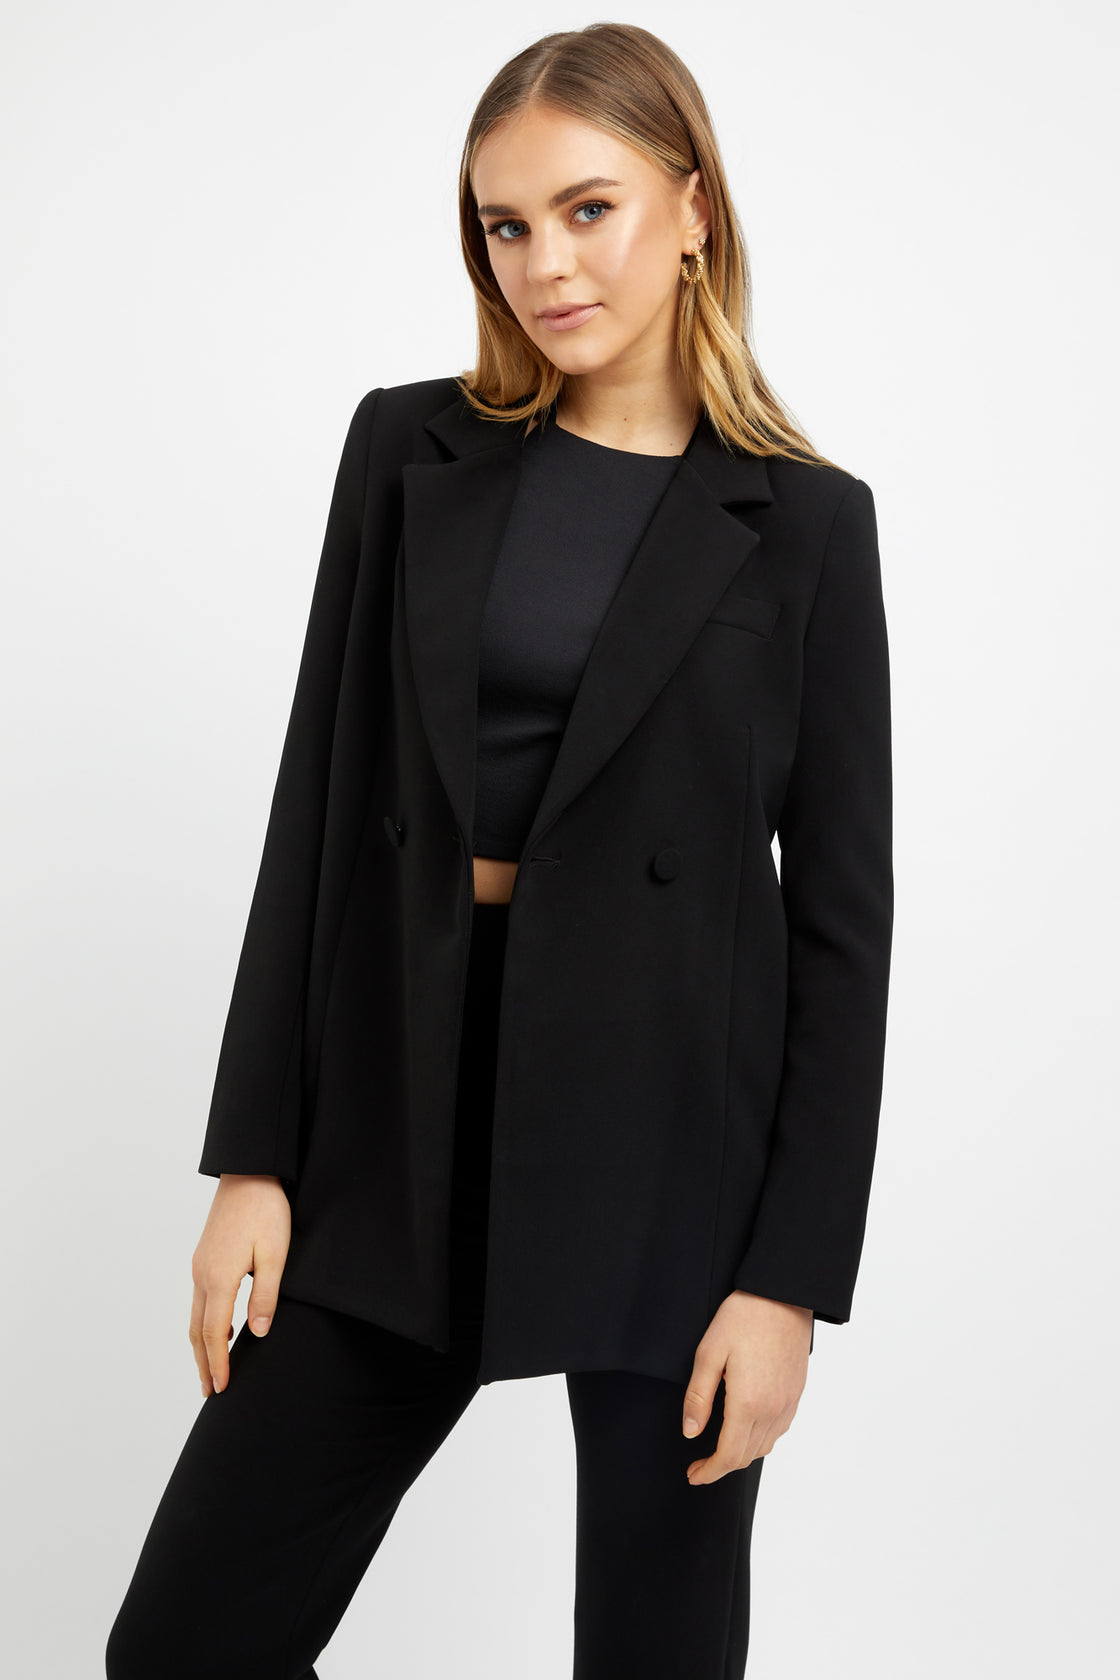 Buy Women's Blazer Jackets Online in Australia | KOOKAÏ